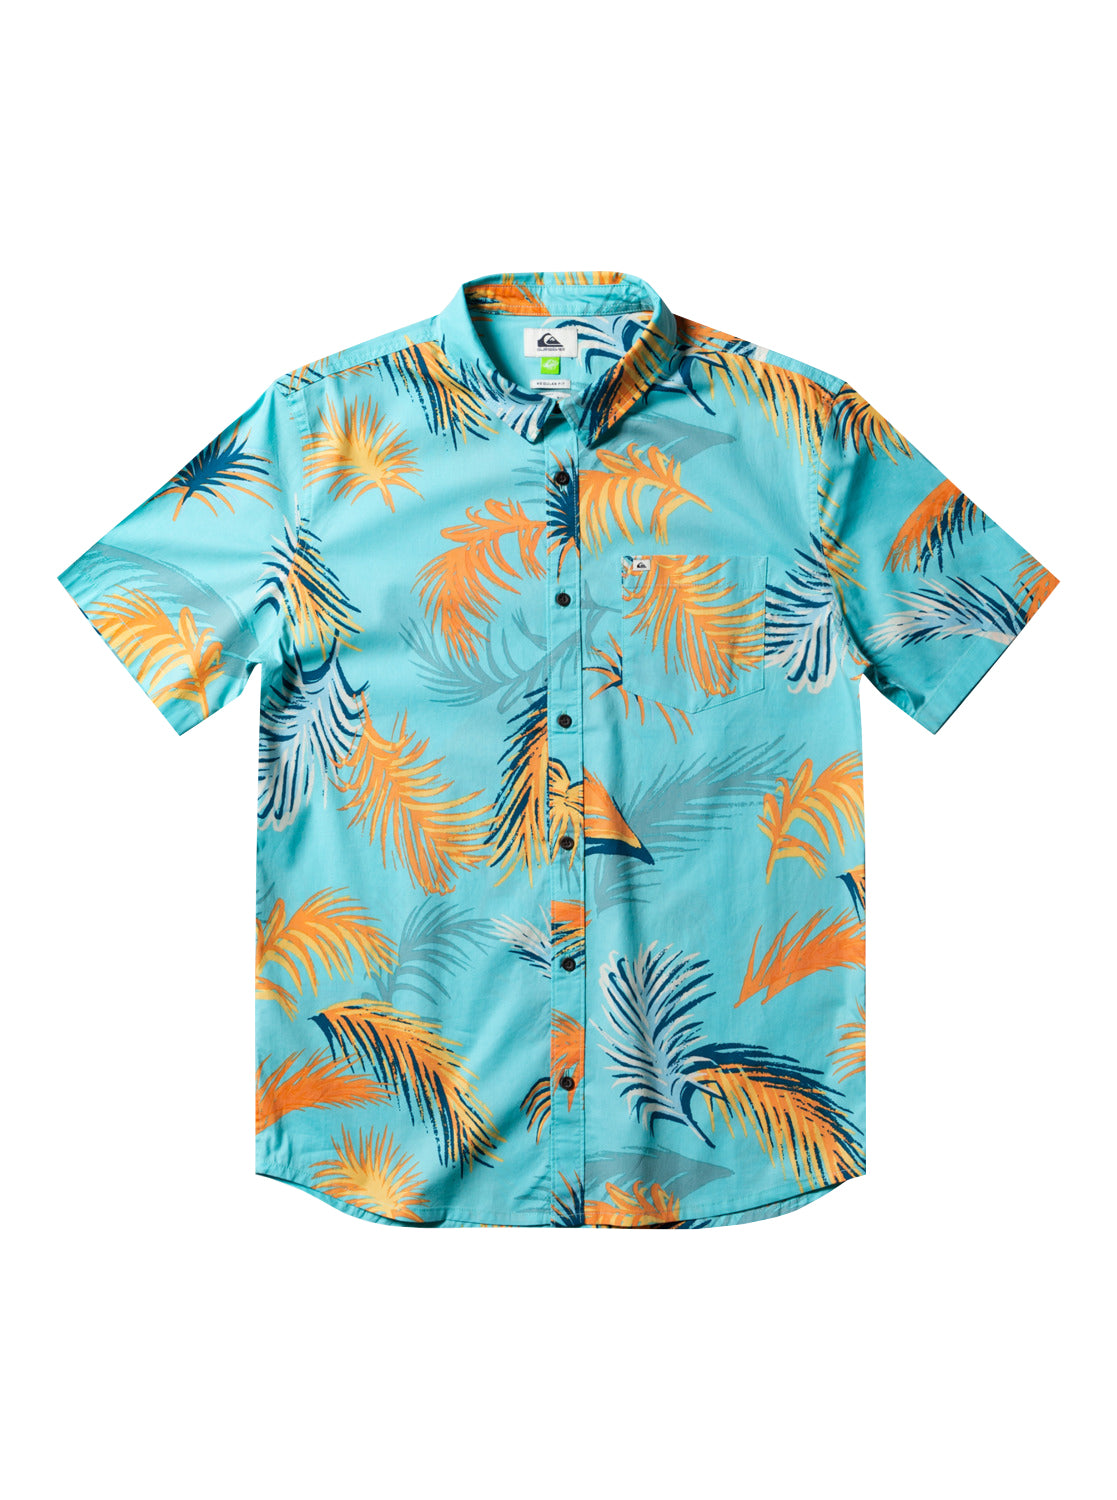 Quiksilver Tropical Gultch SS Shirt